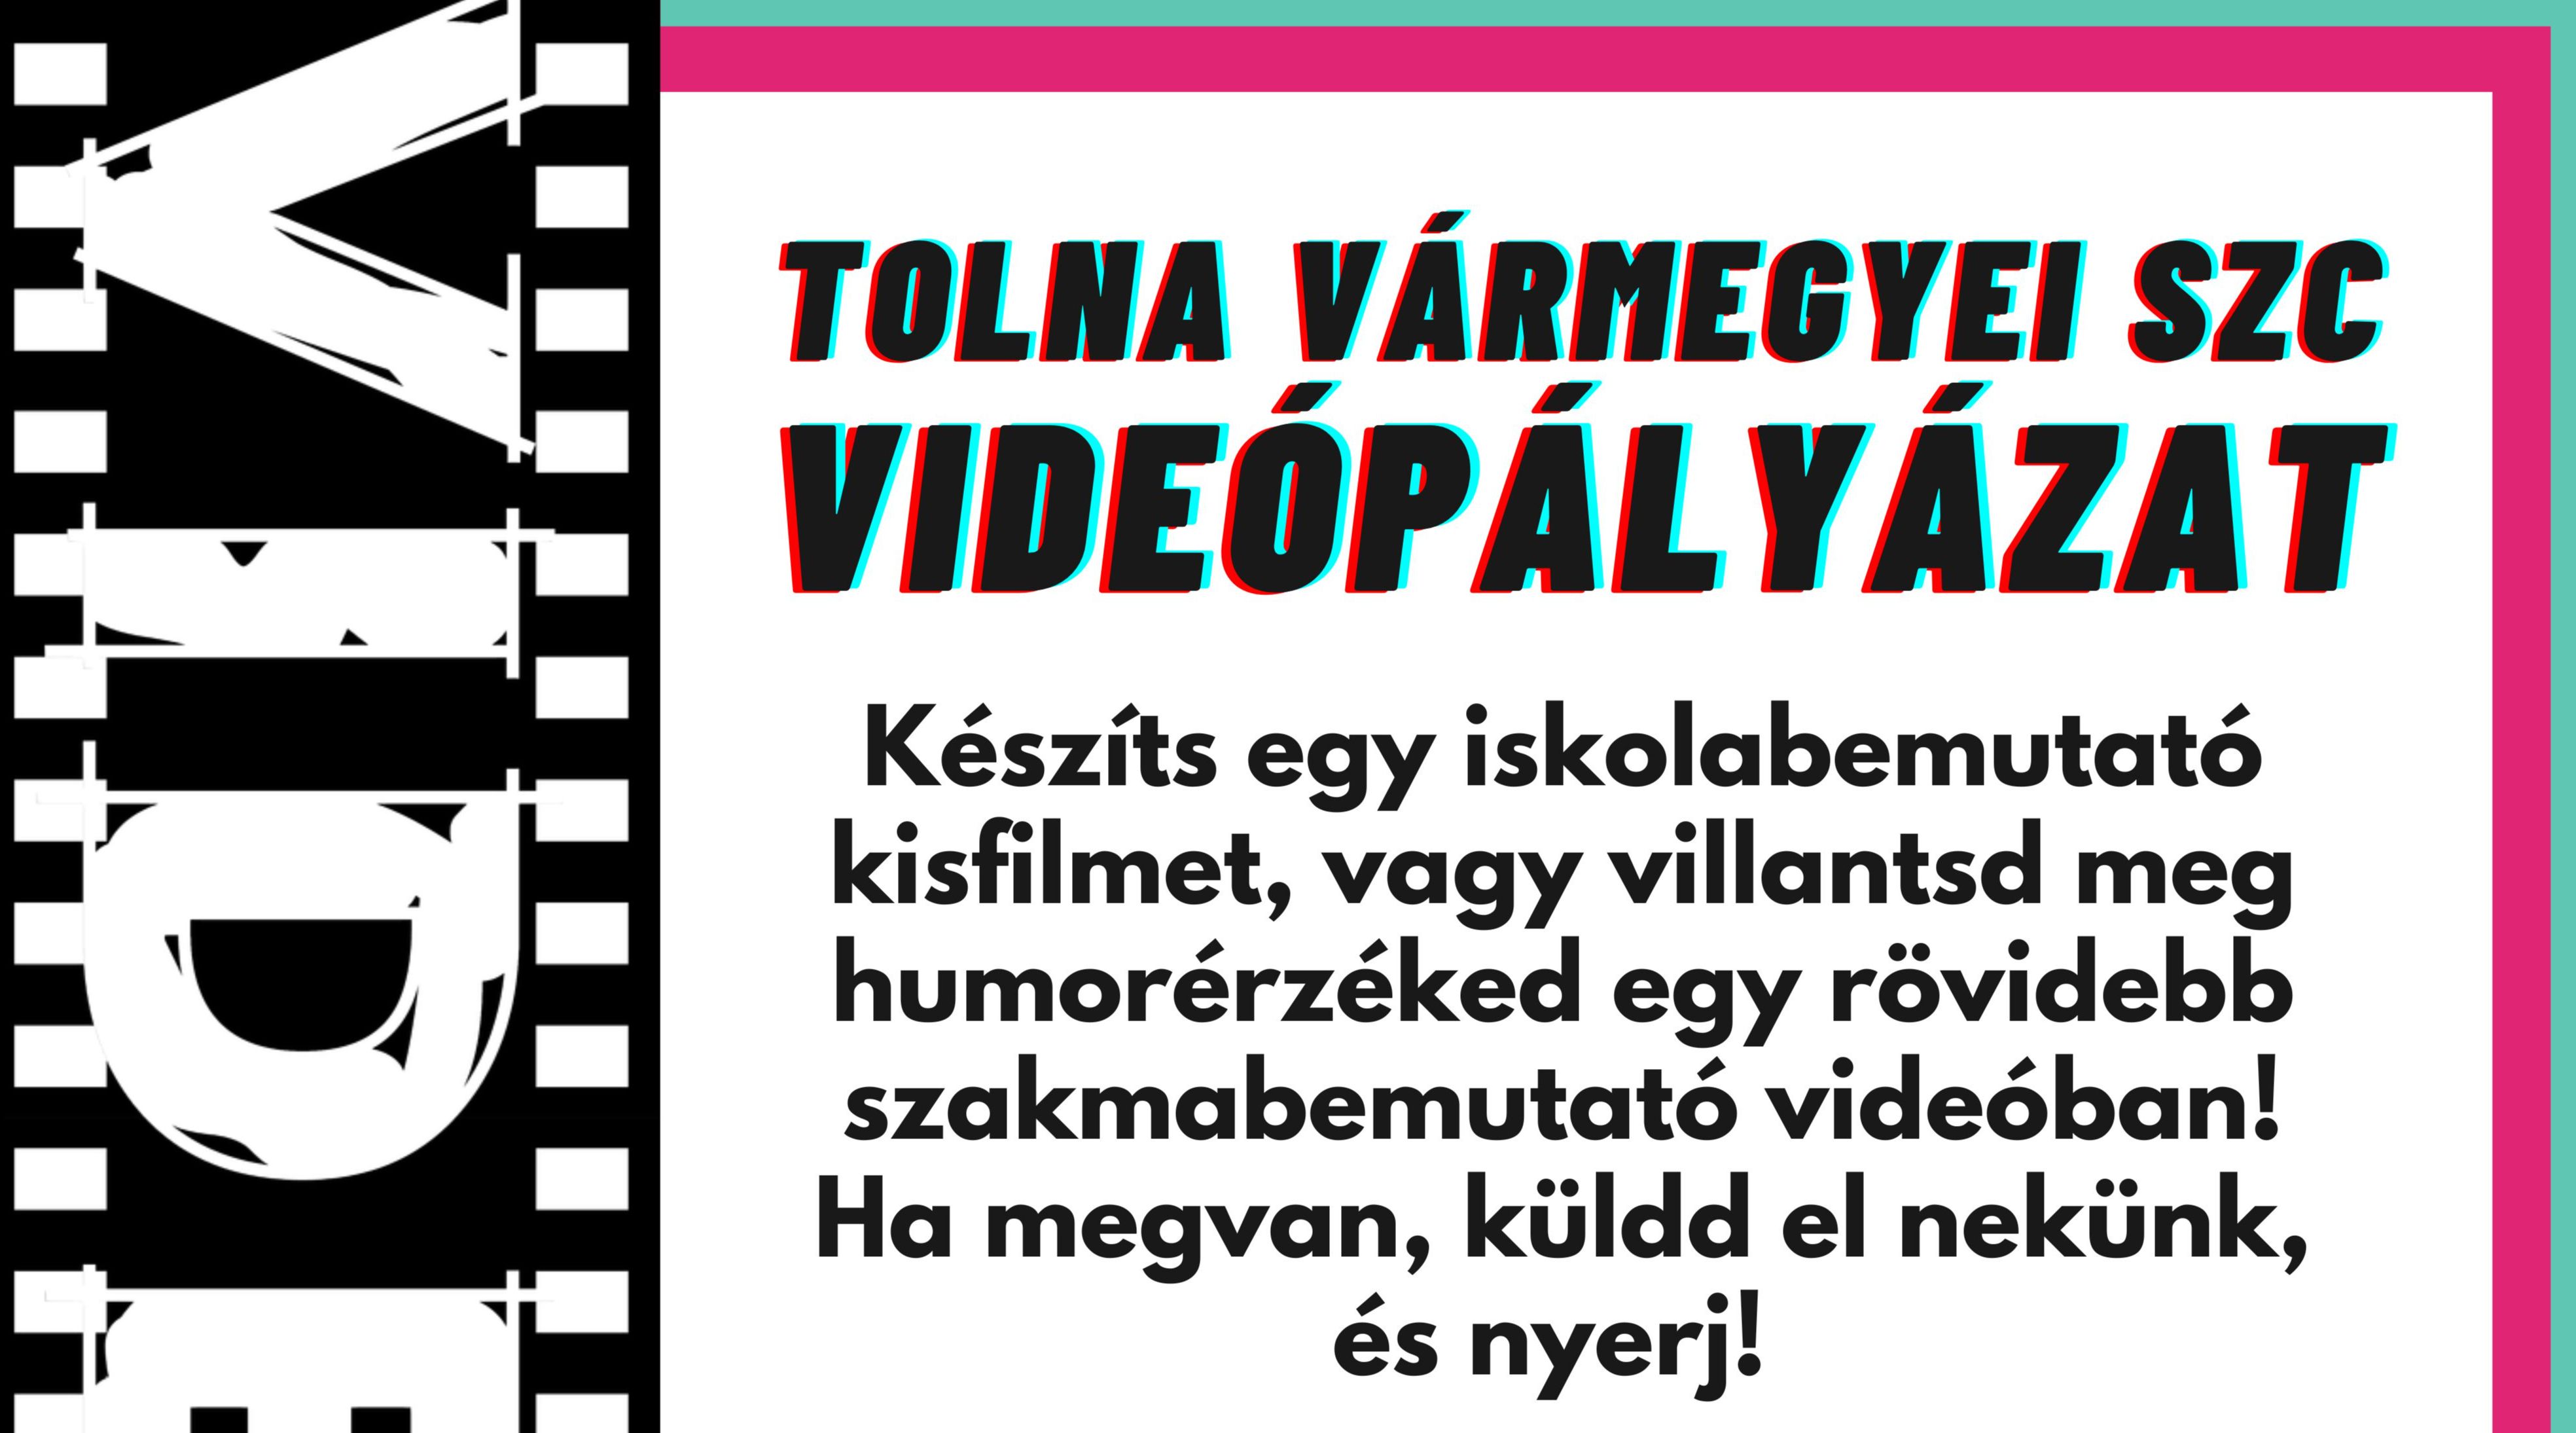 Tolna Vármegyei SZC videópályázat című hír borítóképe